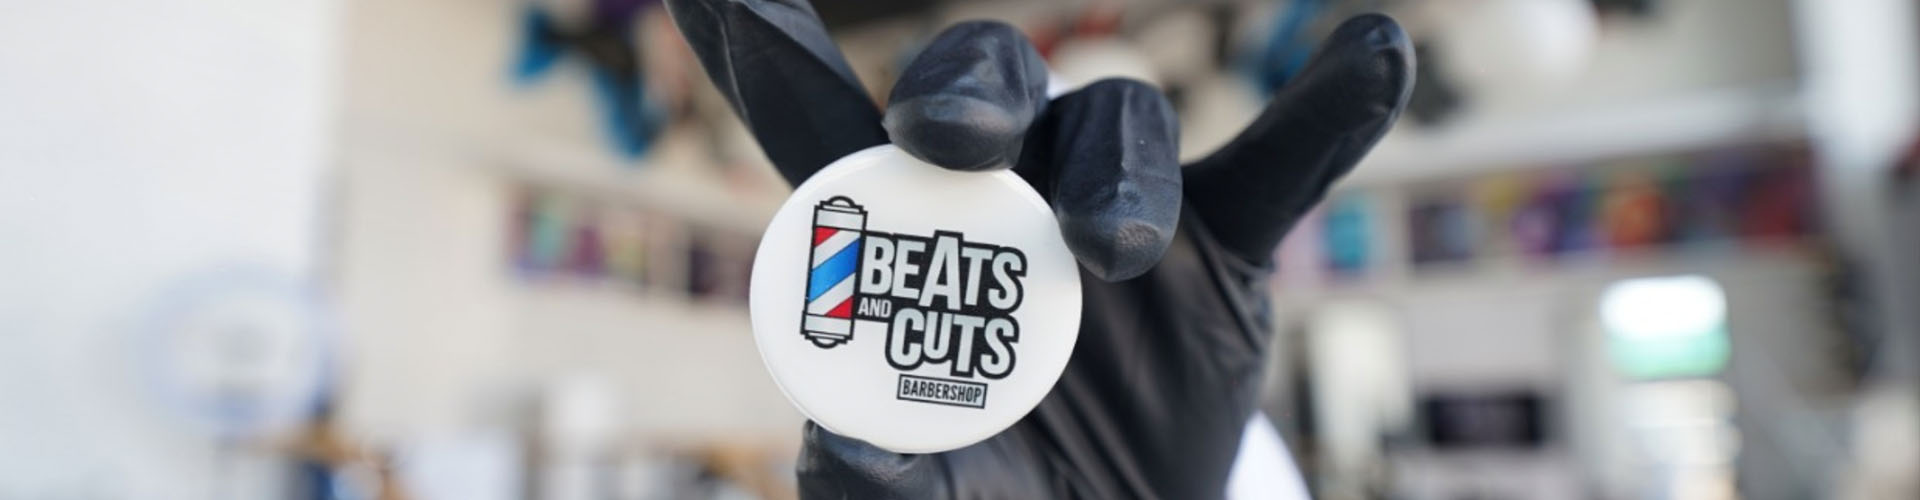 Beats and cuts barbershop 